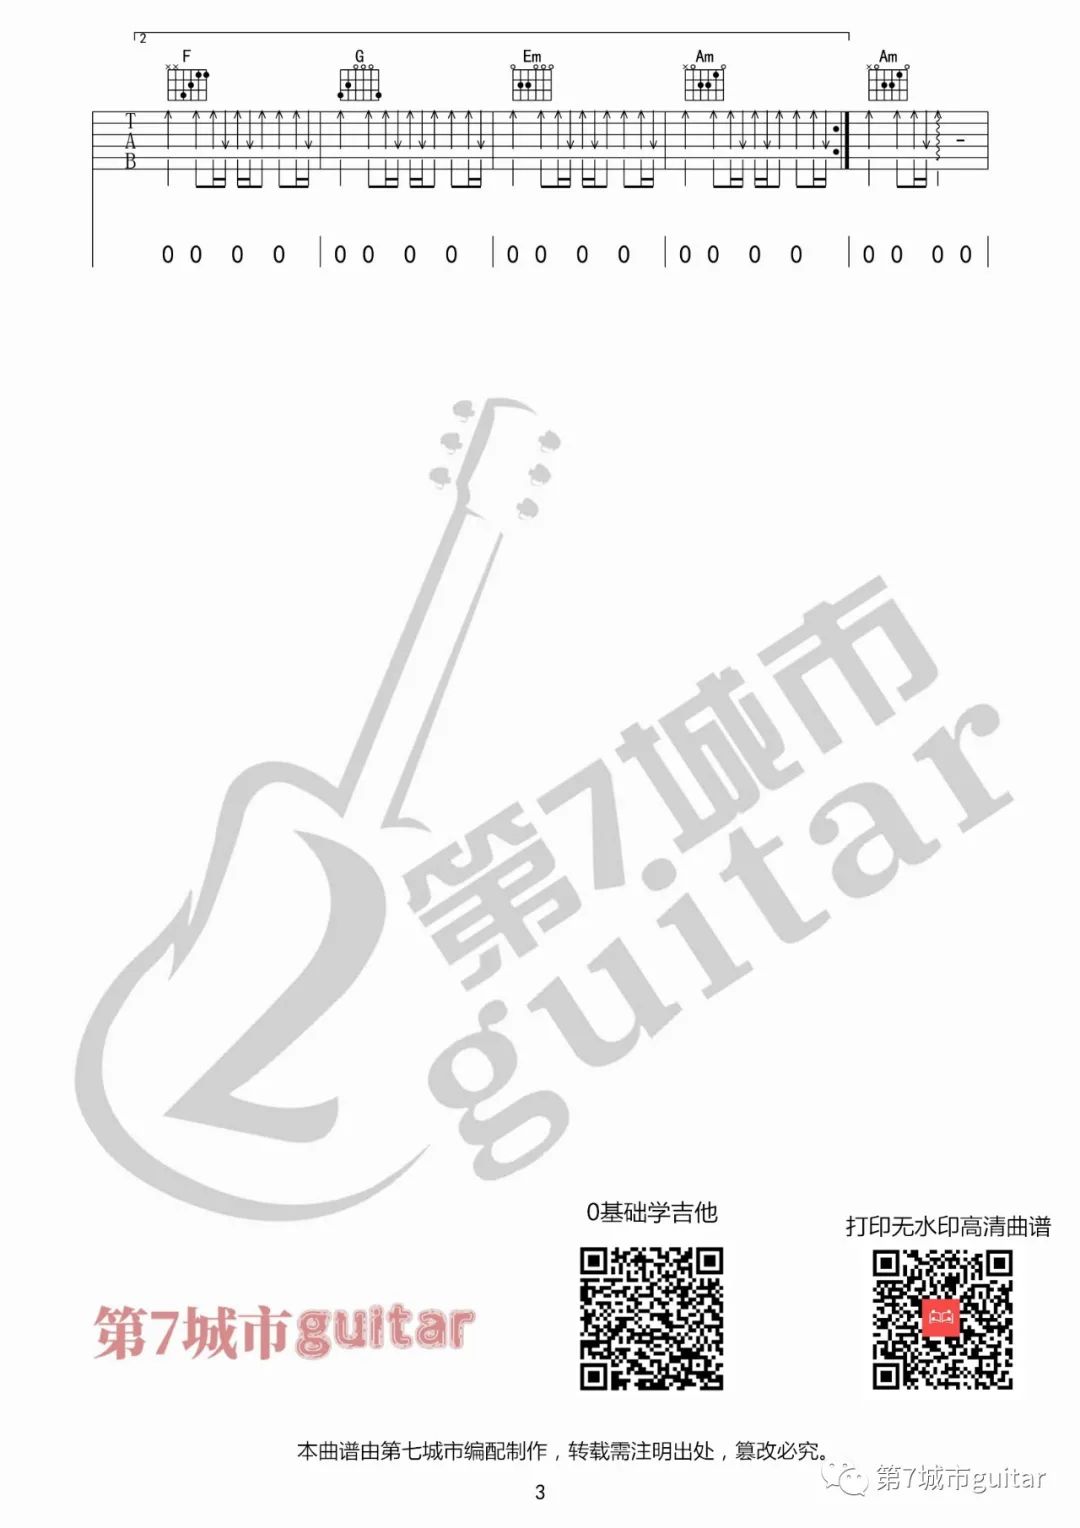 时光洪流吉他谱第七城市编配吉他堂-3